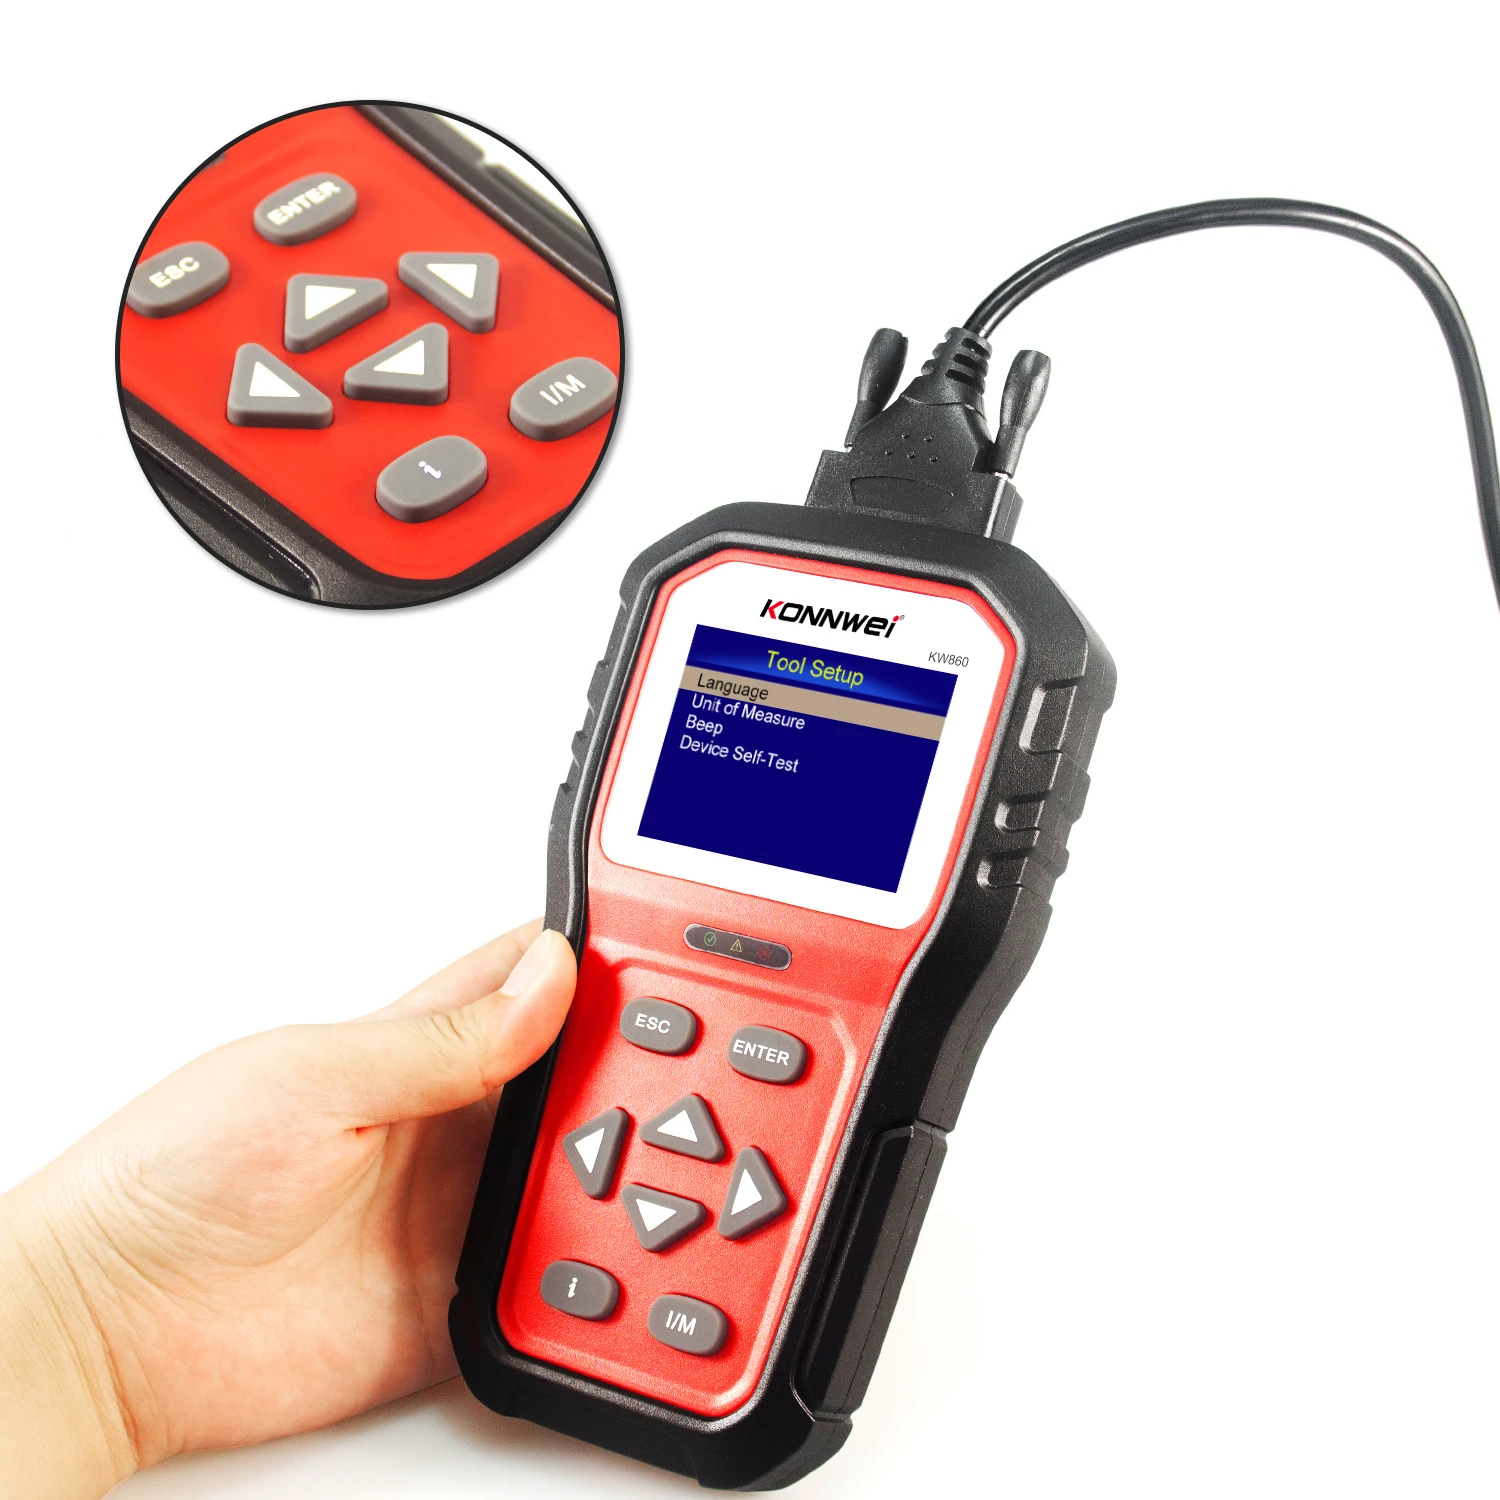 Diagnostic Code Reader for Vehicle Engine Fault O2 Sensor System Scan Tool Since 1996 Black OBD2 OBDII EOBD Automotive Scanner KW830